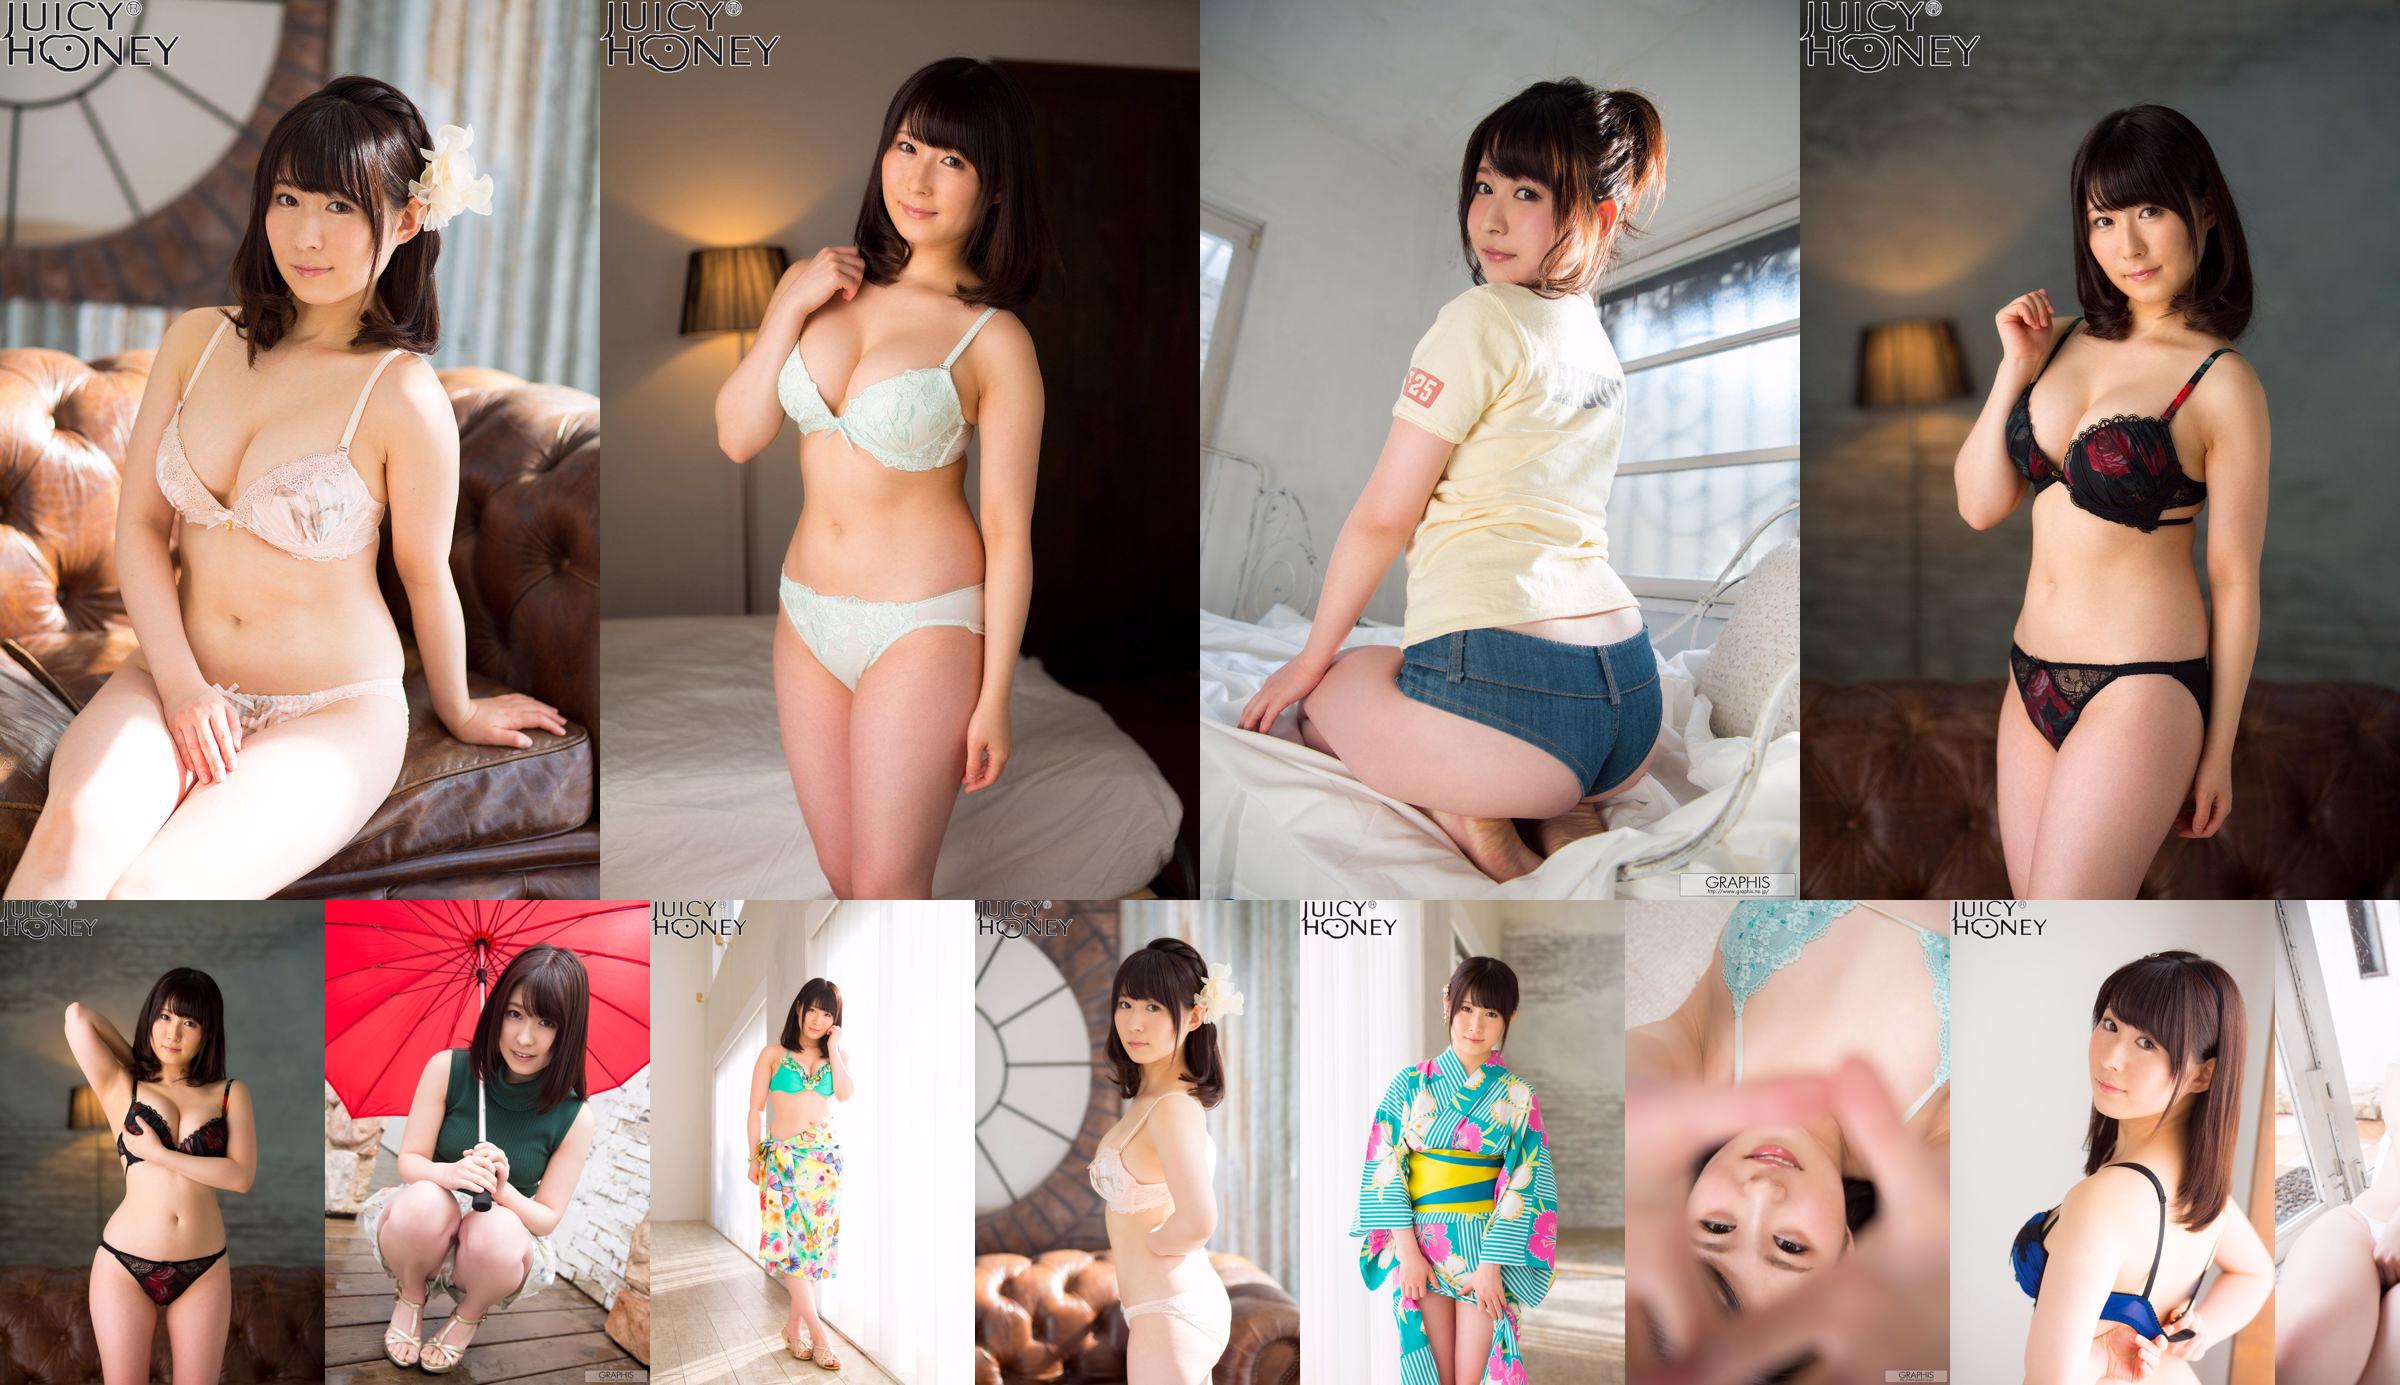 [X-City] Juicy Honey jh216 Asuka Rin Asuka No.db5786 Halaman 2